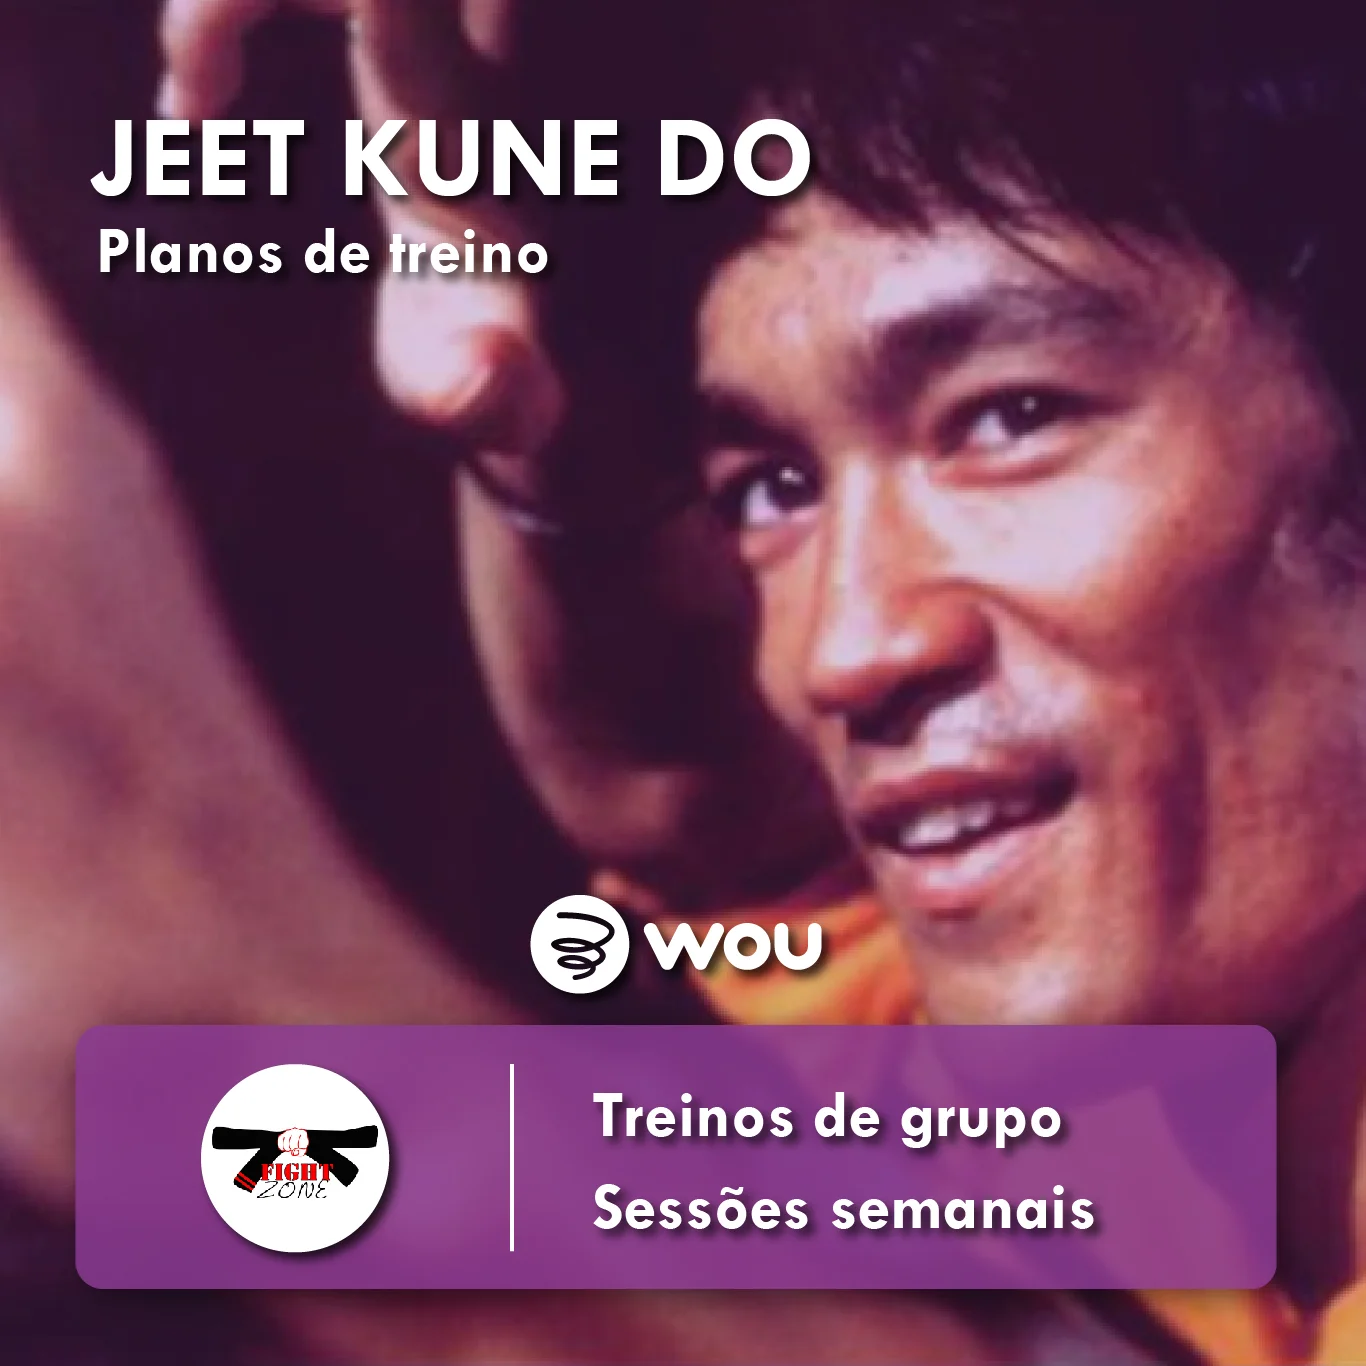 Jeet Kune Do classes in Aveiro